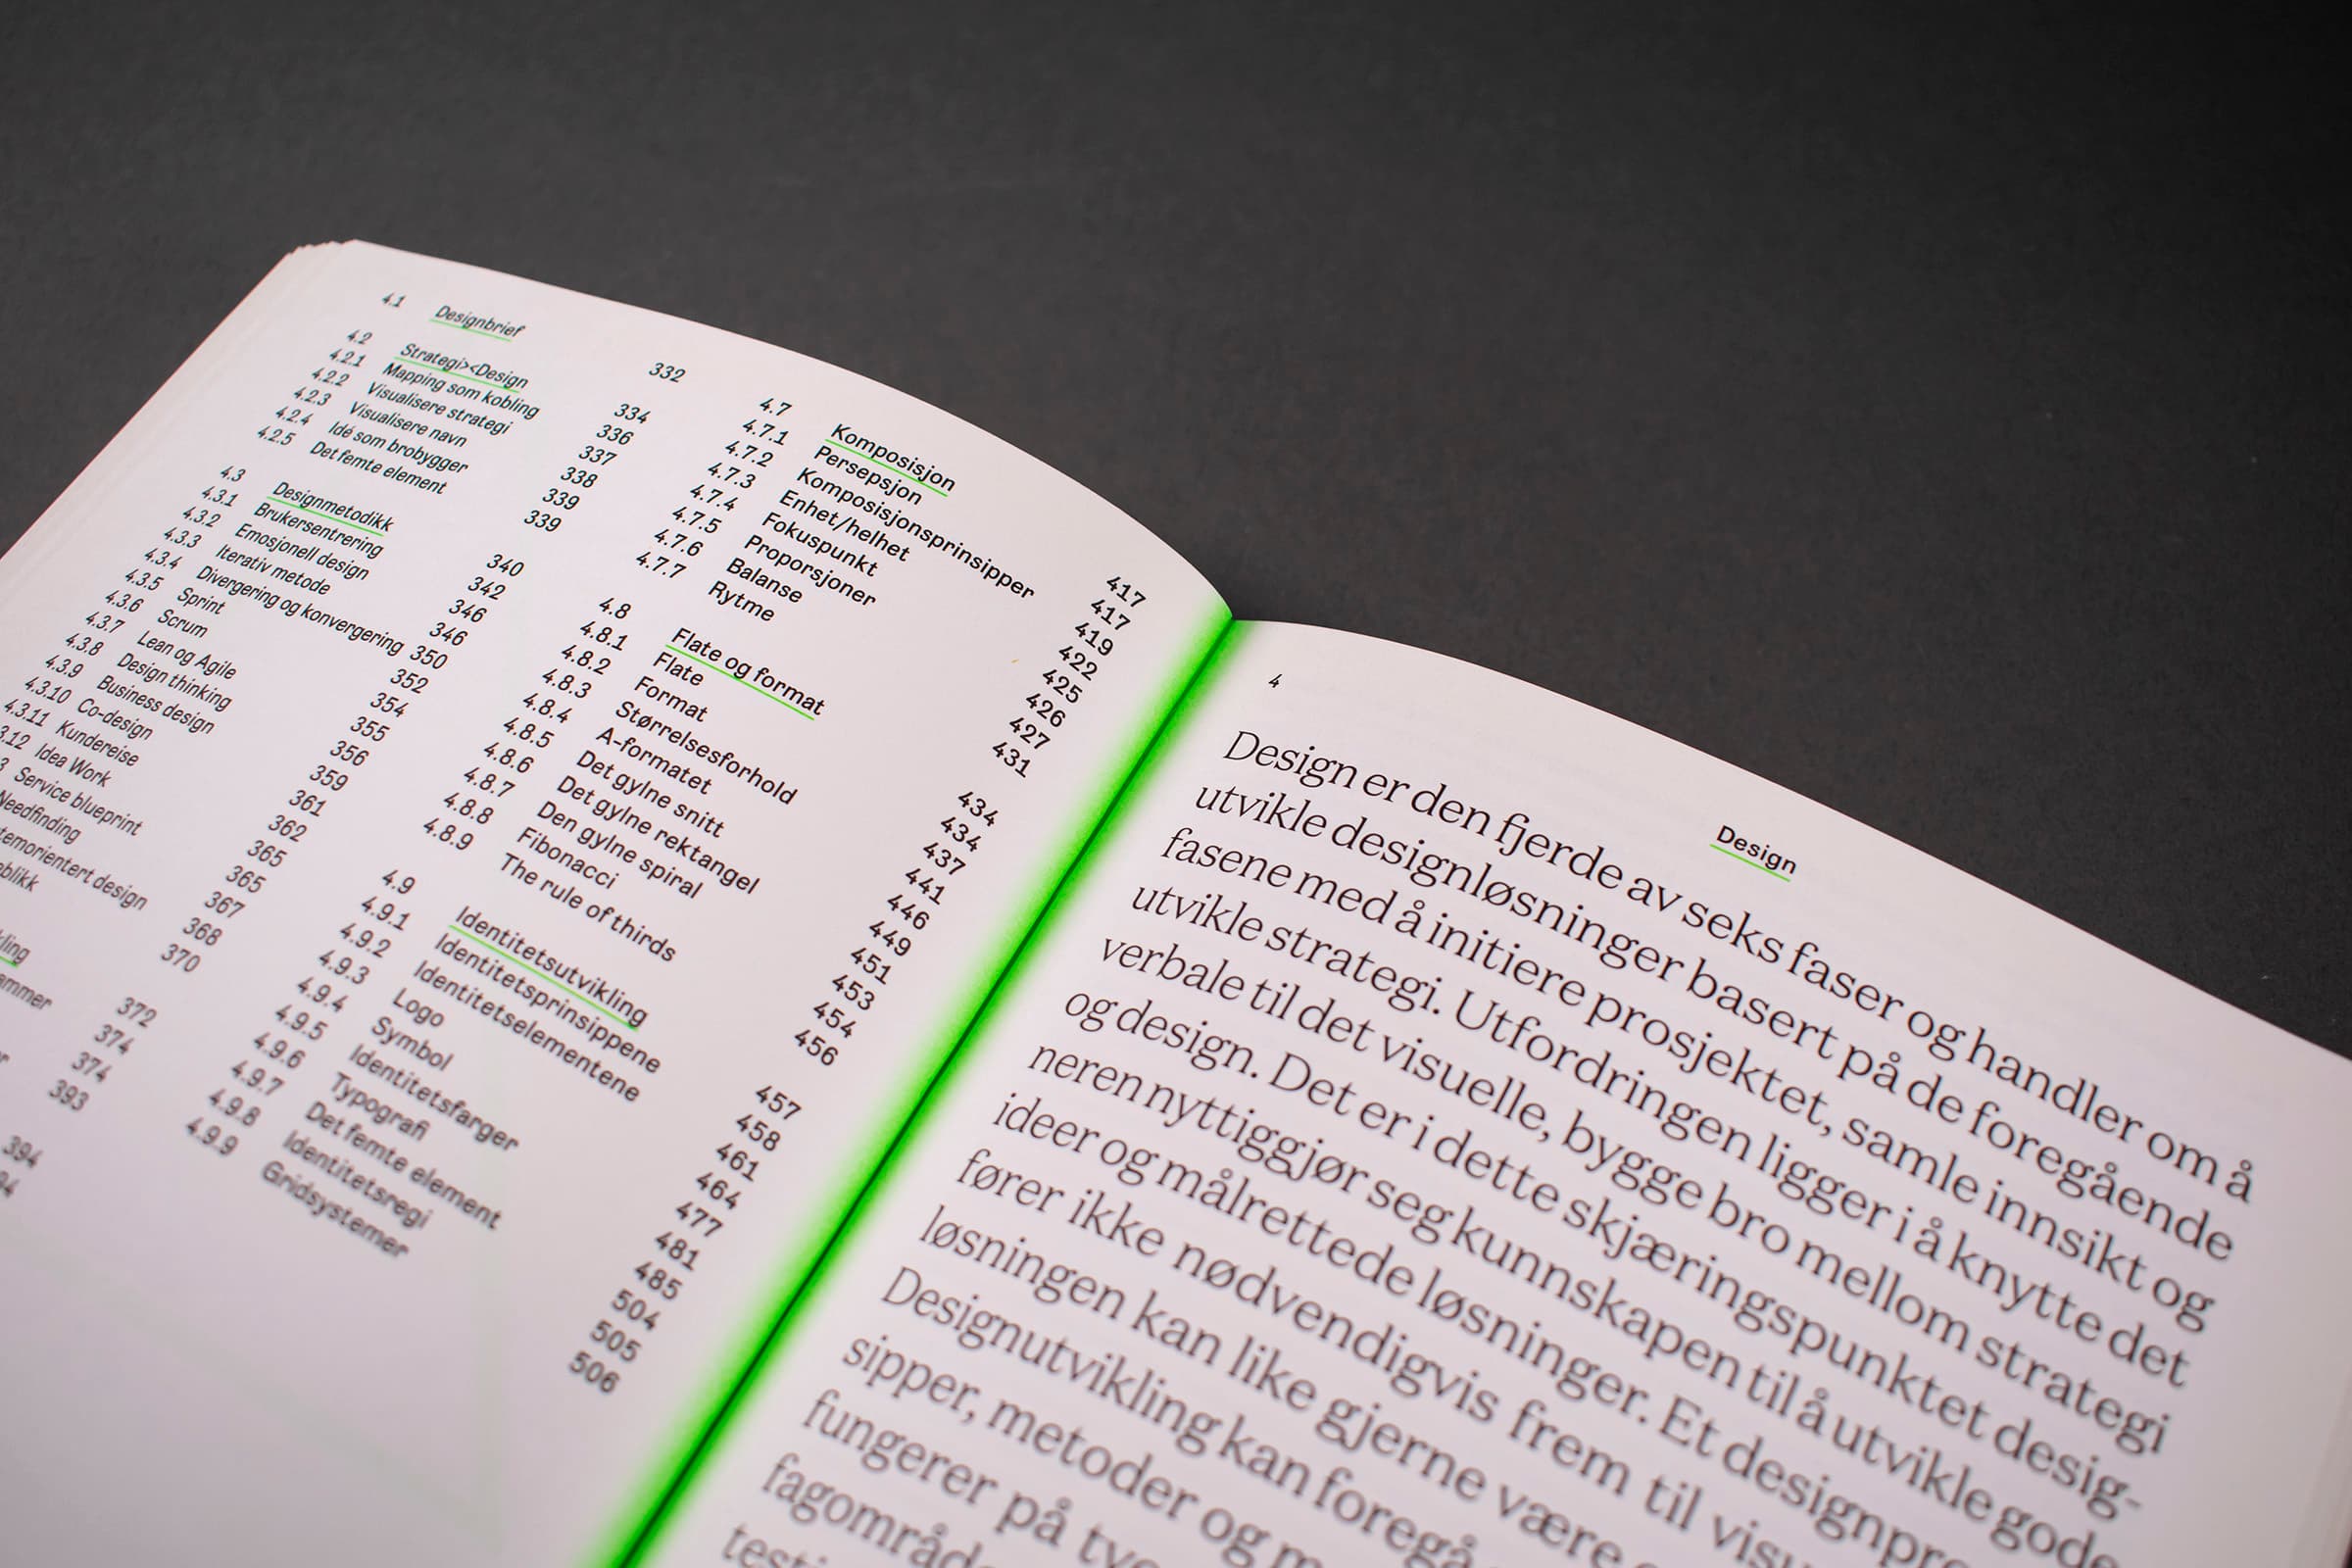 Bildet viser et oppslag av Design og Strategi. På venstre side er det en innholdsfortegnelse, mens det er tekst på høyre side. I midten av boken, i bretten, er det et neon-grønt fargefelt som "gløder".